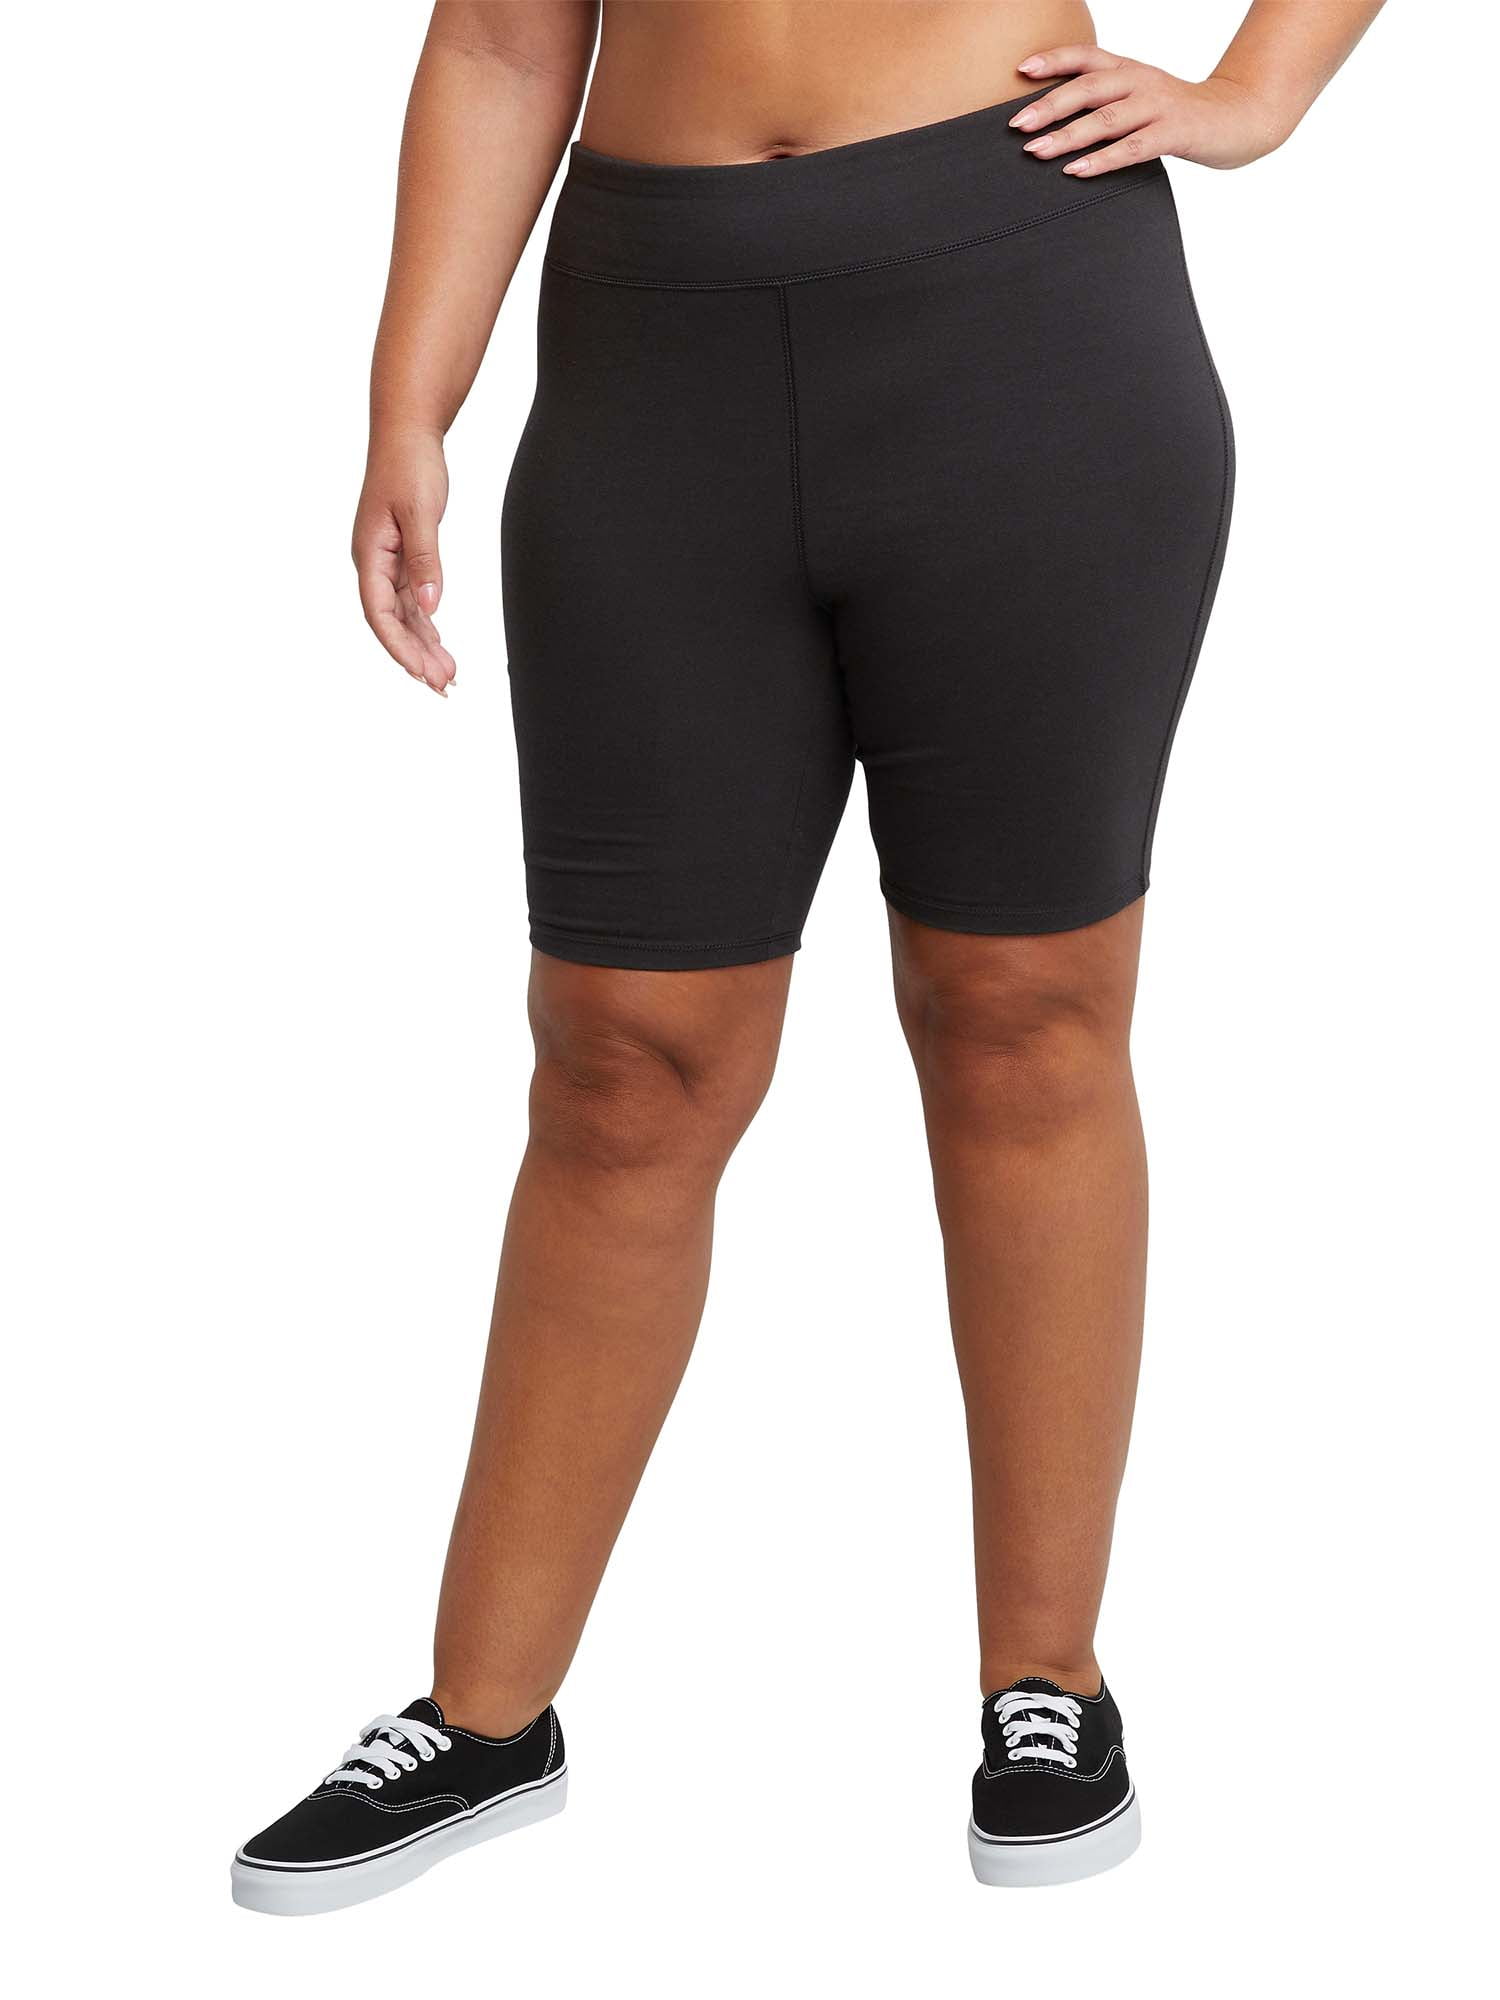 Hanes Women's Jersey Pocket Short - Black - XL